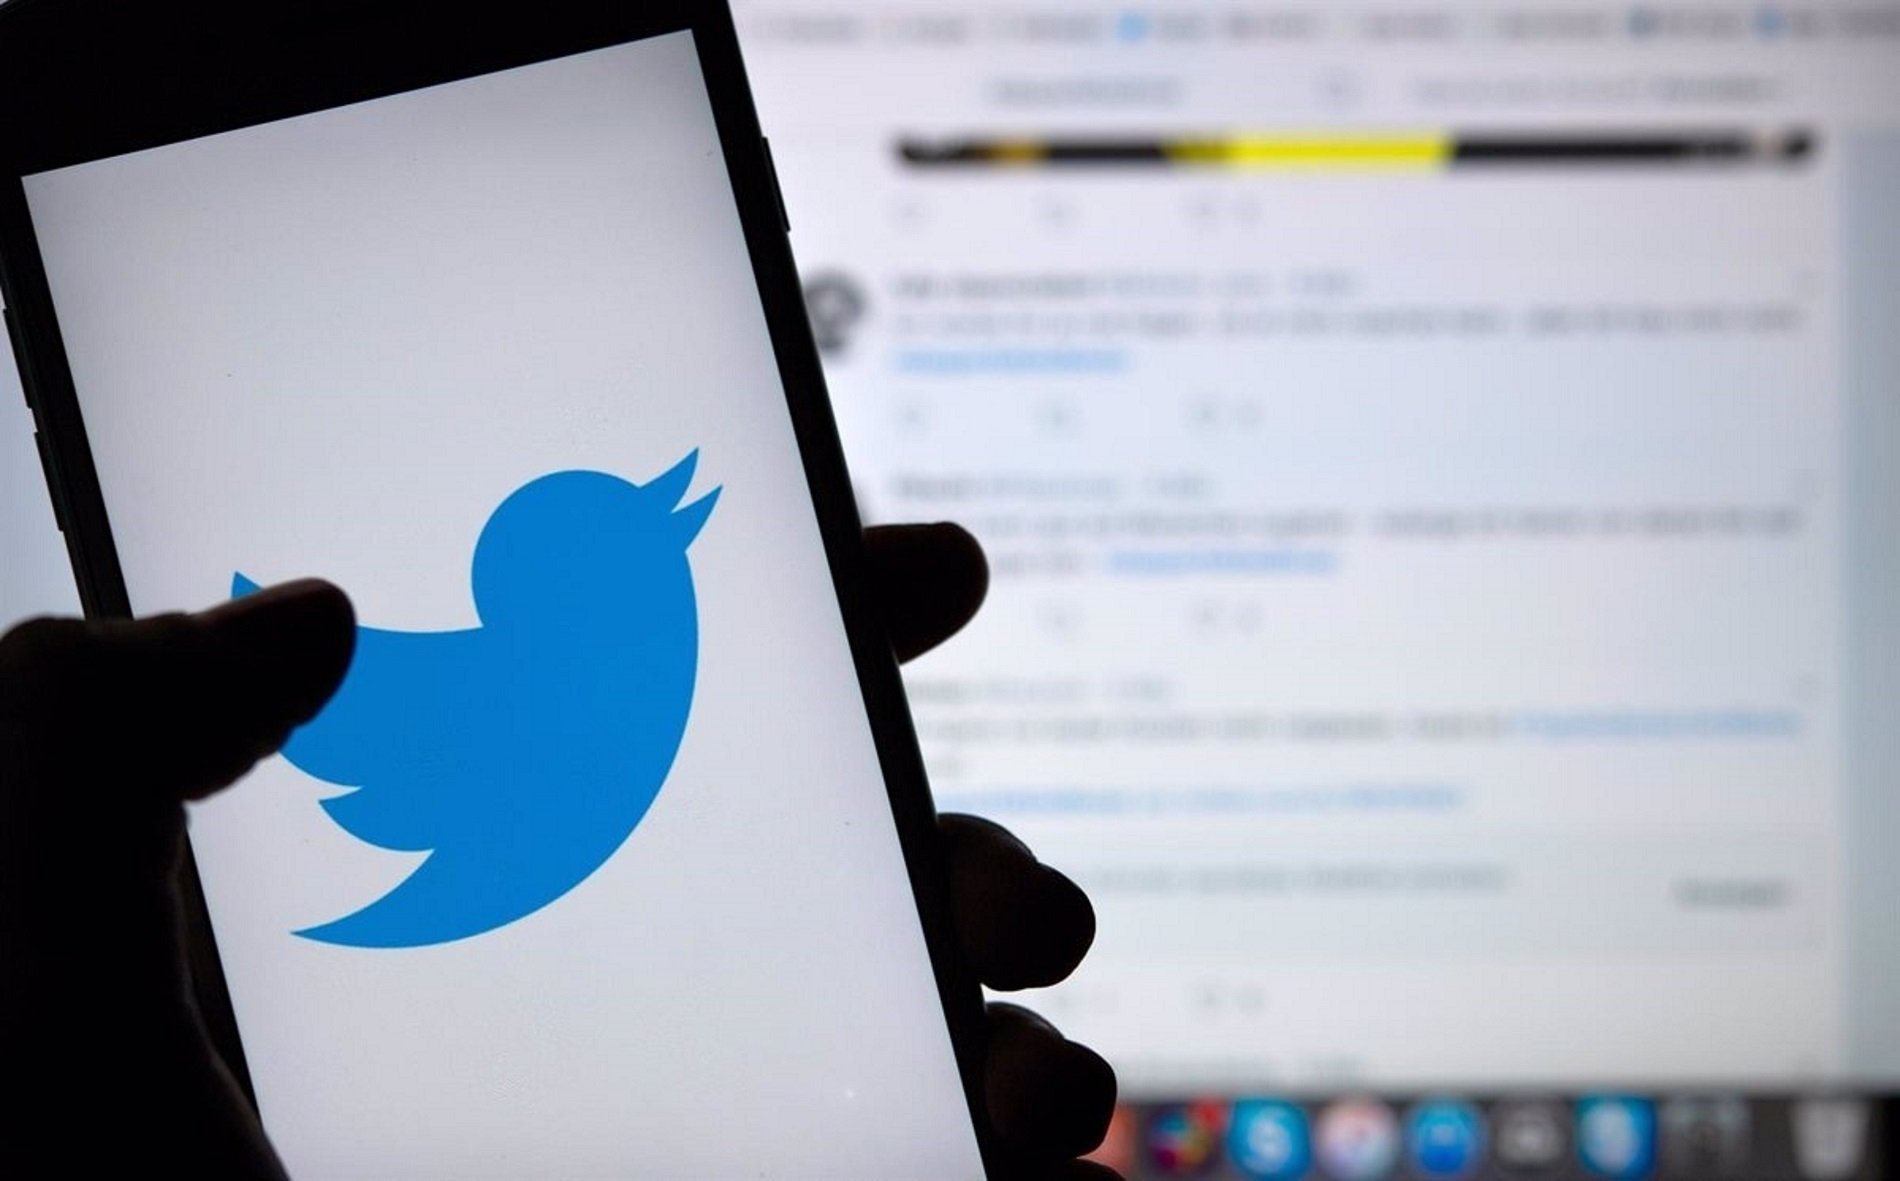 Problemas en Twitter: los usuarios informan que la aplicación no funciona correctamente